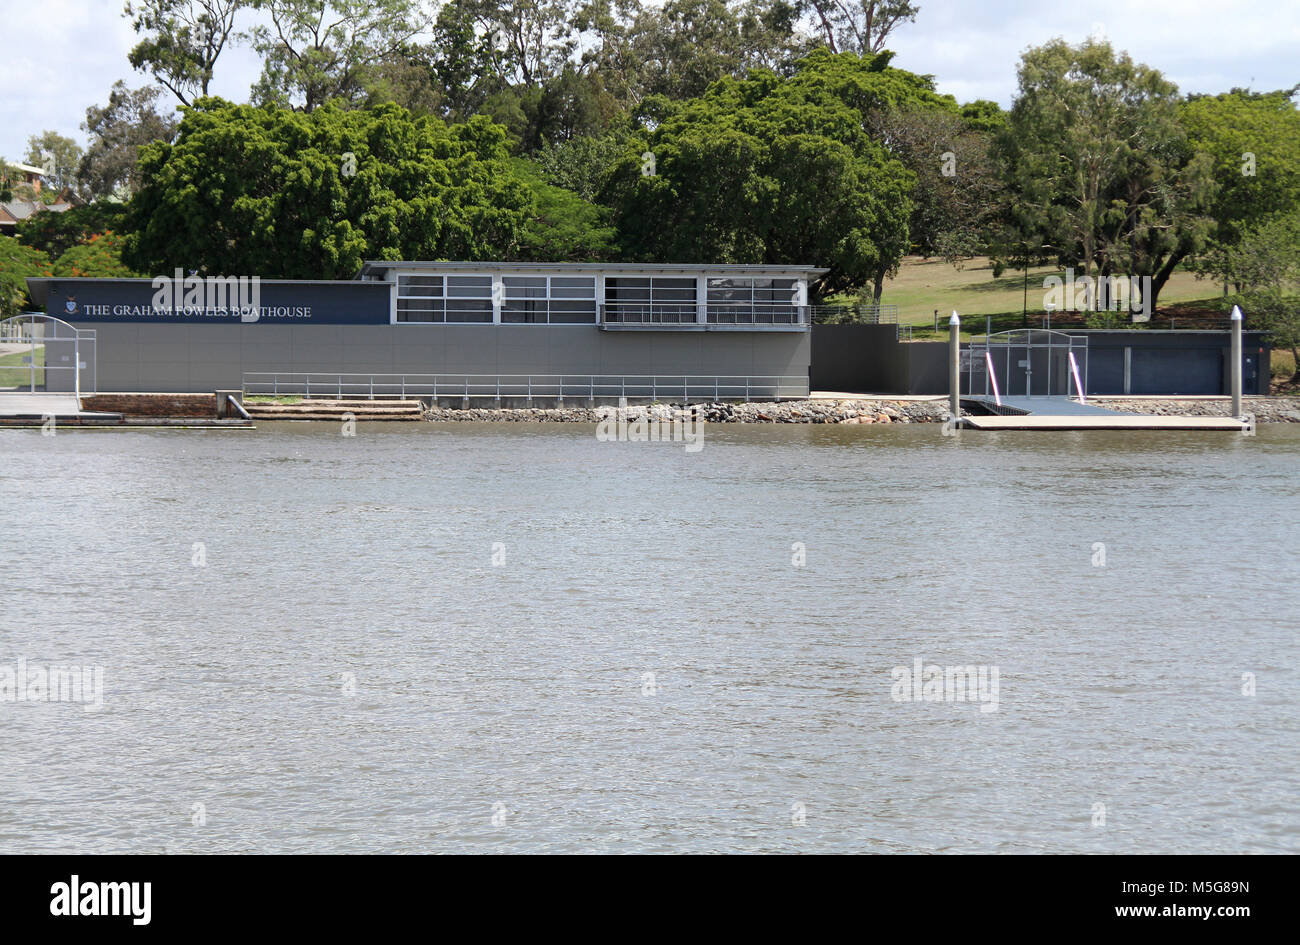 Le Graham Fowles Boathouse, fleuve de Brisbane, Australie Banque D'Images